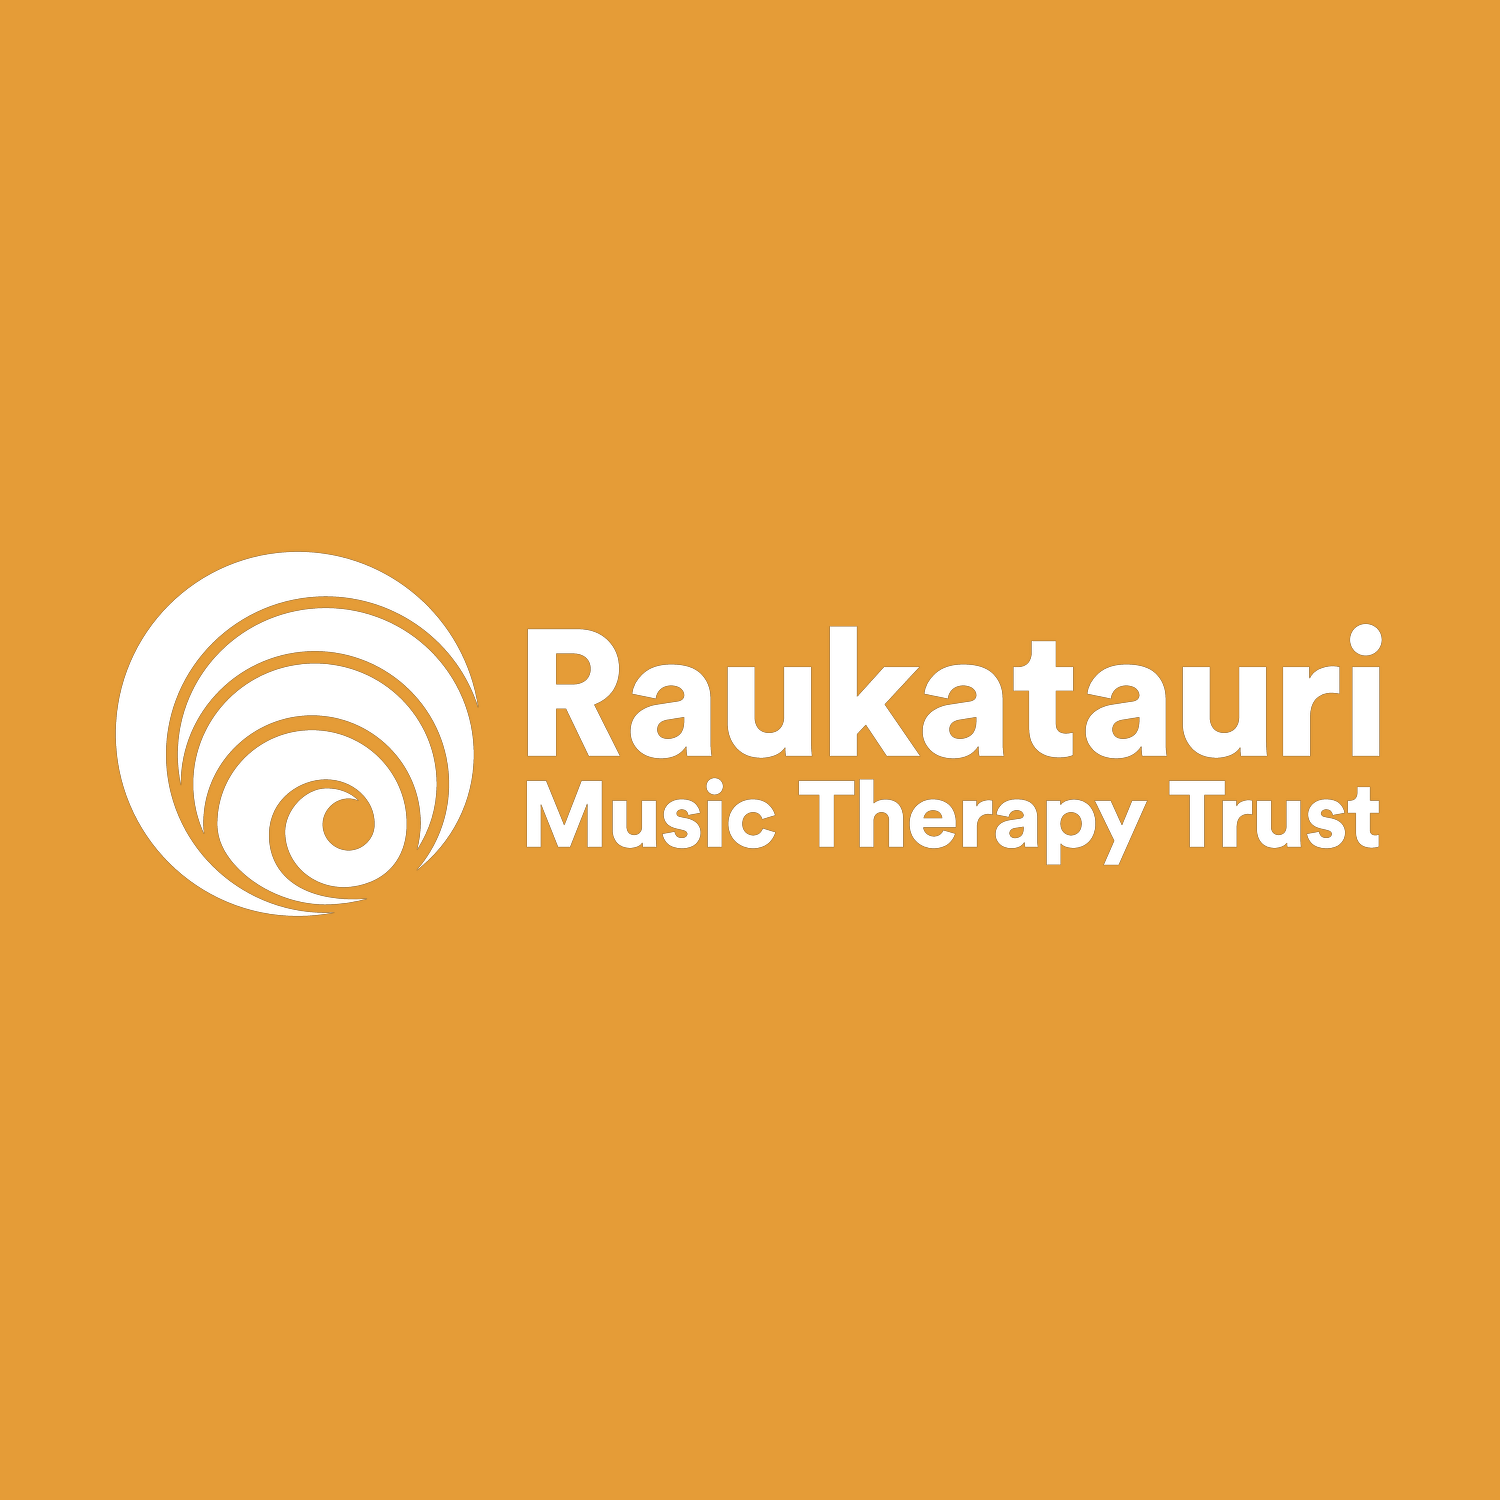 Raukatauri Music Therapy Trust Celebrates 20 Years